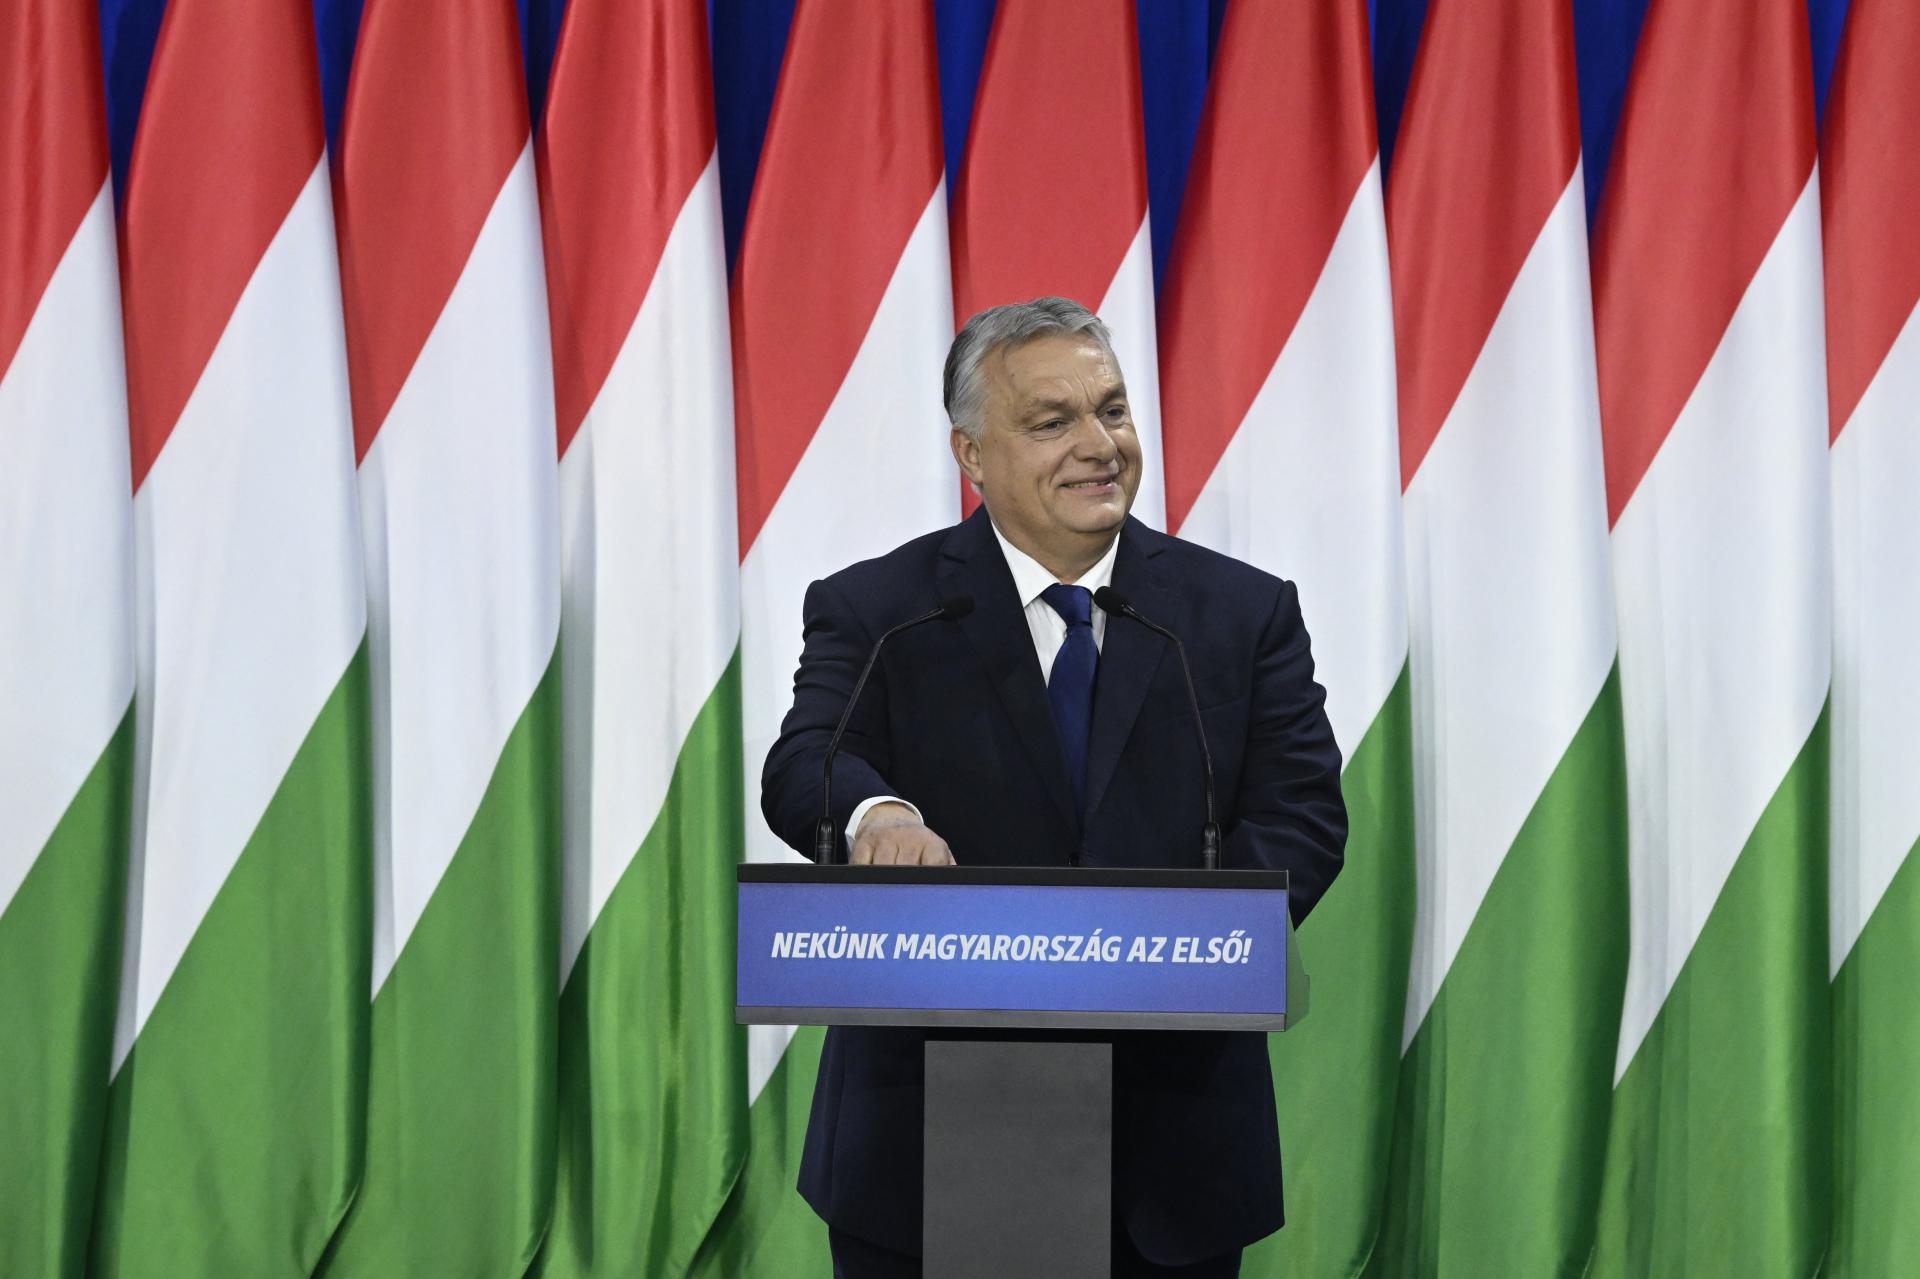 Nový prezident musí zdôrazniť, že za pedofíliu sa nebude udeľovať milosť, odkázal Orbán